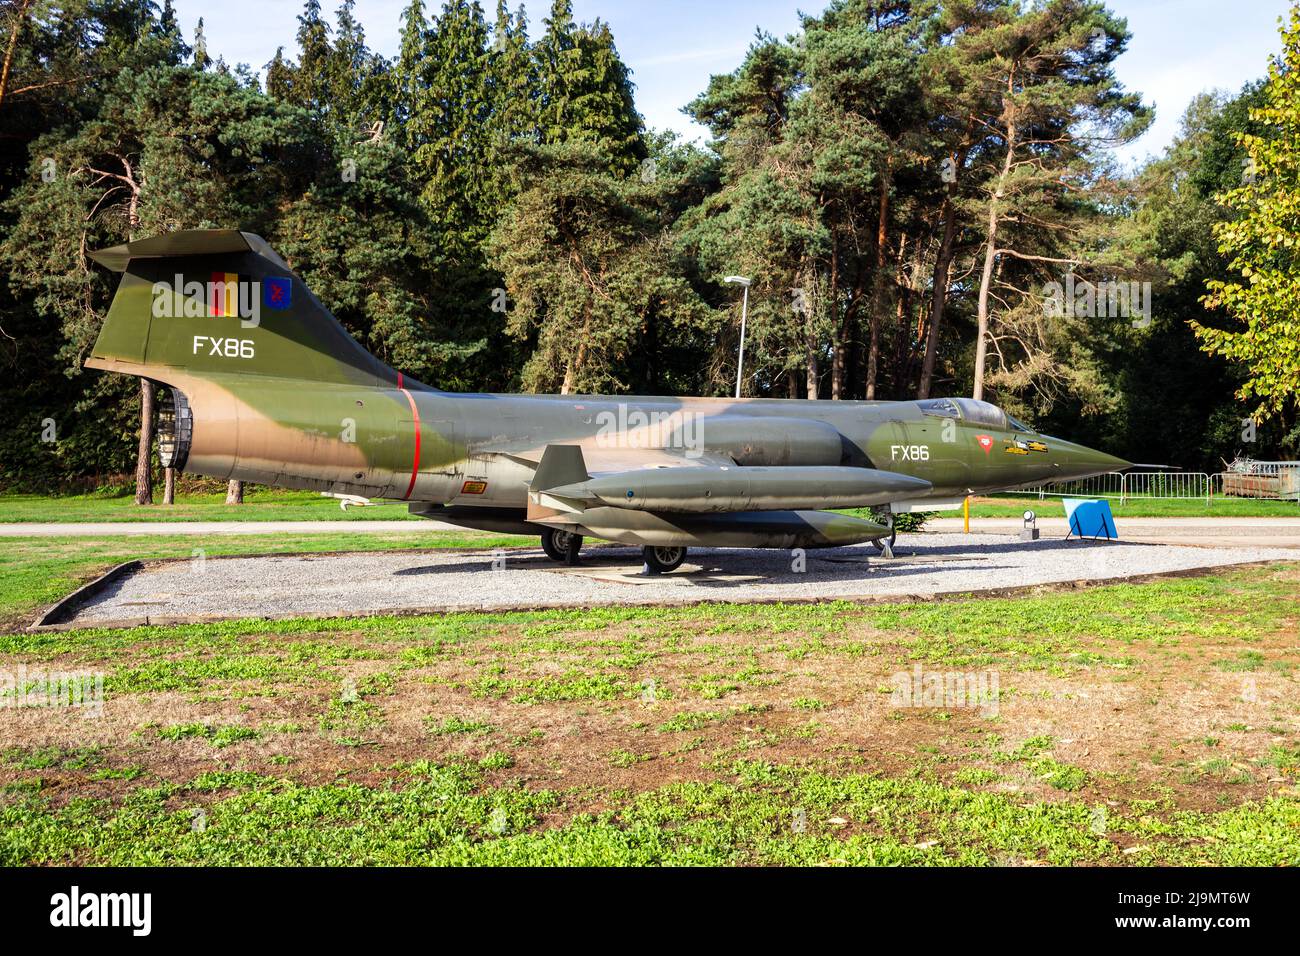 L'Aeronautica militare belga Lockheed F-104G Starfighter, il jet da caccia conservato, è esposto alla base aerea Kleine-Brogel. Belgio - 8 settembre 2018 Foto Stock